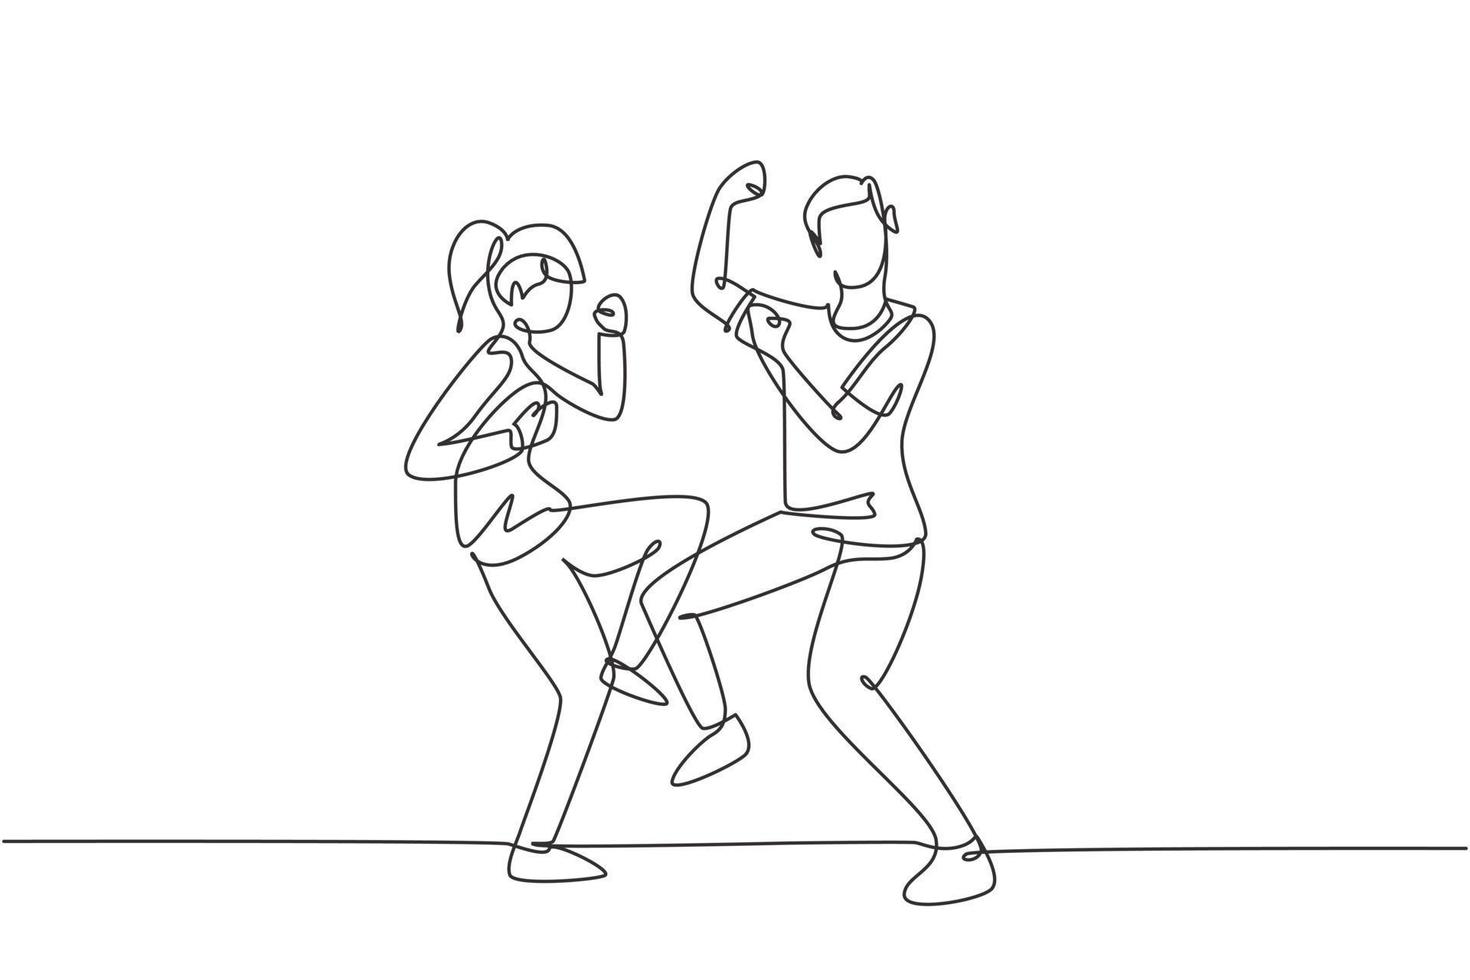 dibujo de una sola línea hombre mujer bailando lindy hop o swing juntos. personajes masculinos y femeninos que bailan en la escuela o en una fiesta. Ilustración de vector gráfico de diseño de dibujo de línea continua moderna